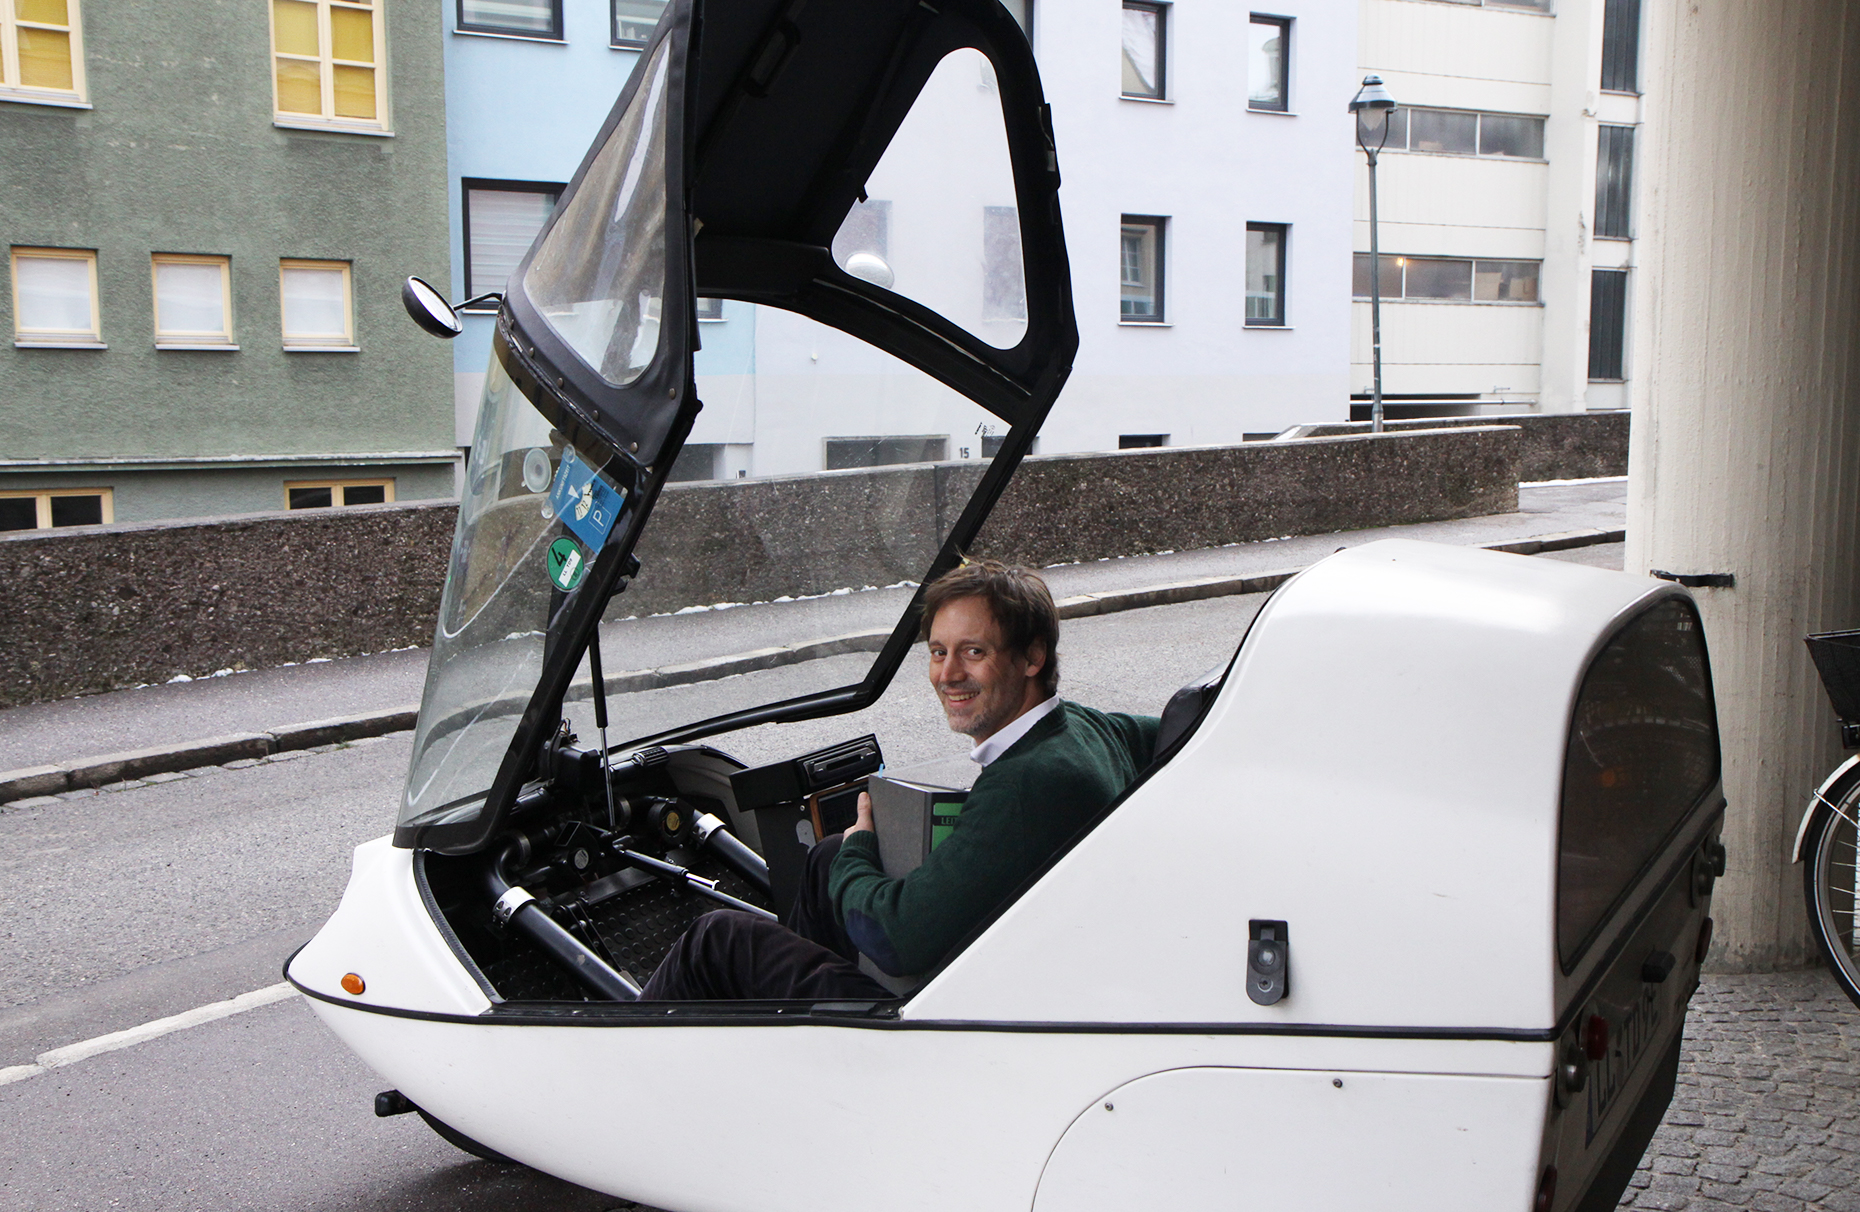 Vor der Hauptverwaltung: Thomas Sailer, Umwelt-, und Energiereferent des Bezirks, in seinem Twike, einem dreirädrigen Leichtelektromobil für zwei Personen